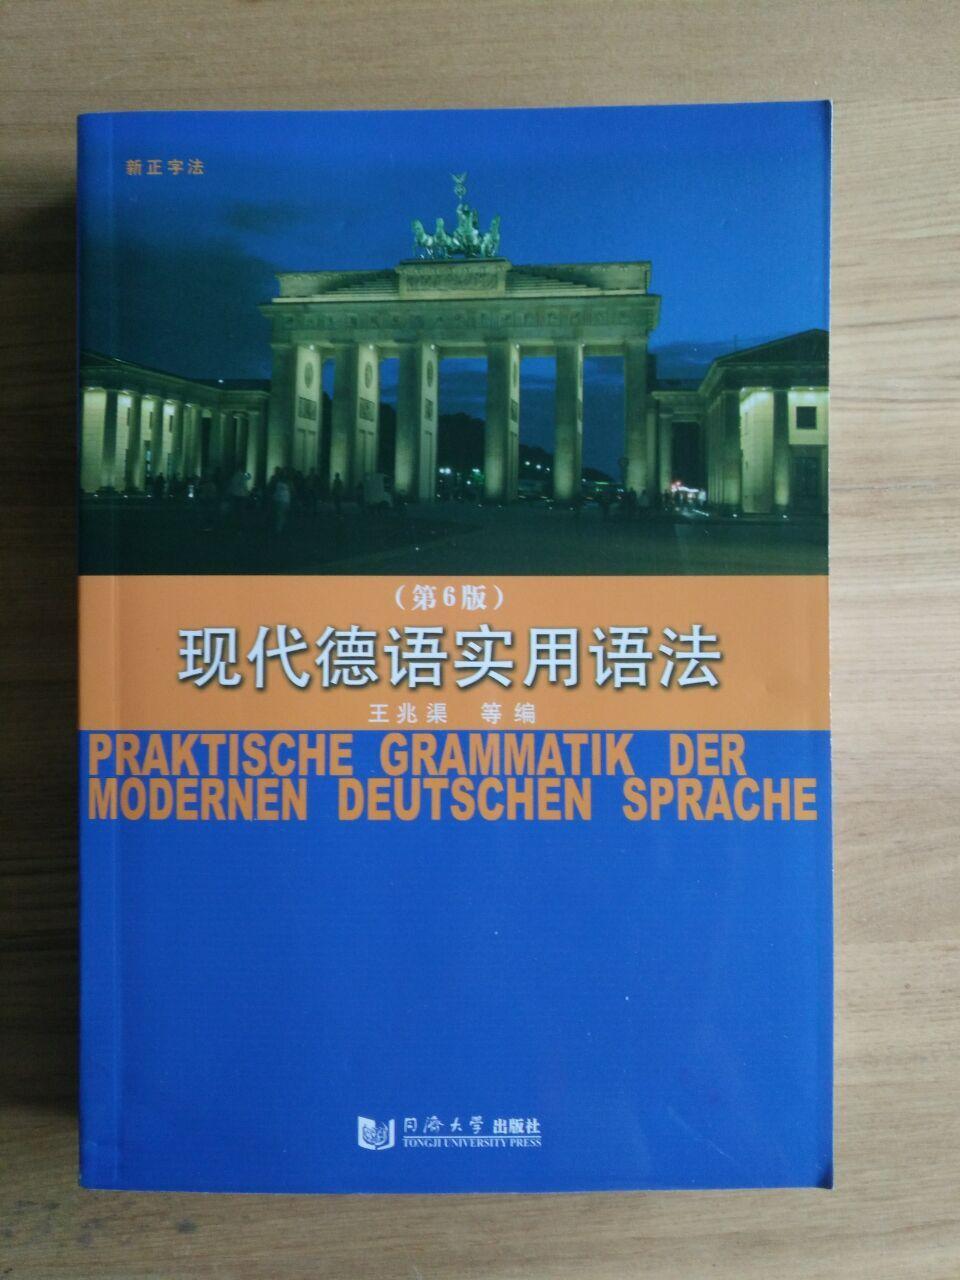 零基础在海外,就买了一本德语入门书,如何自学